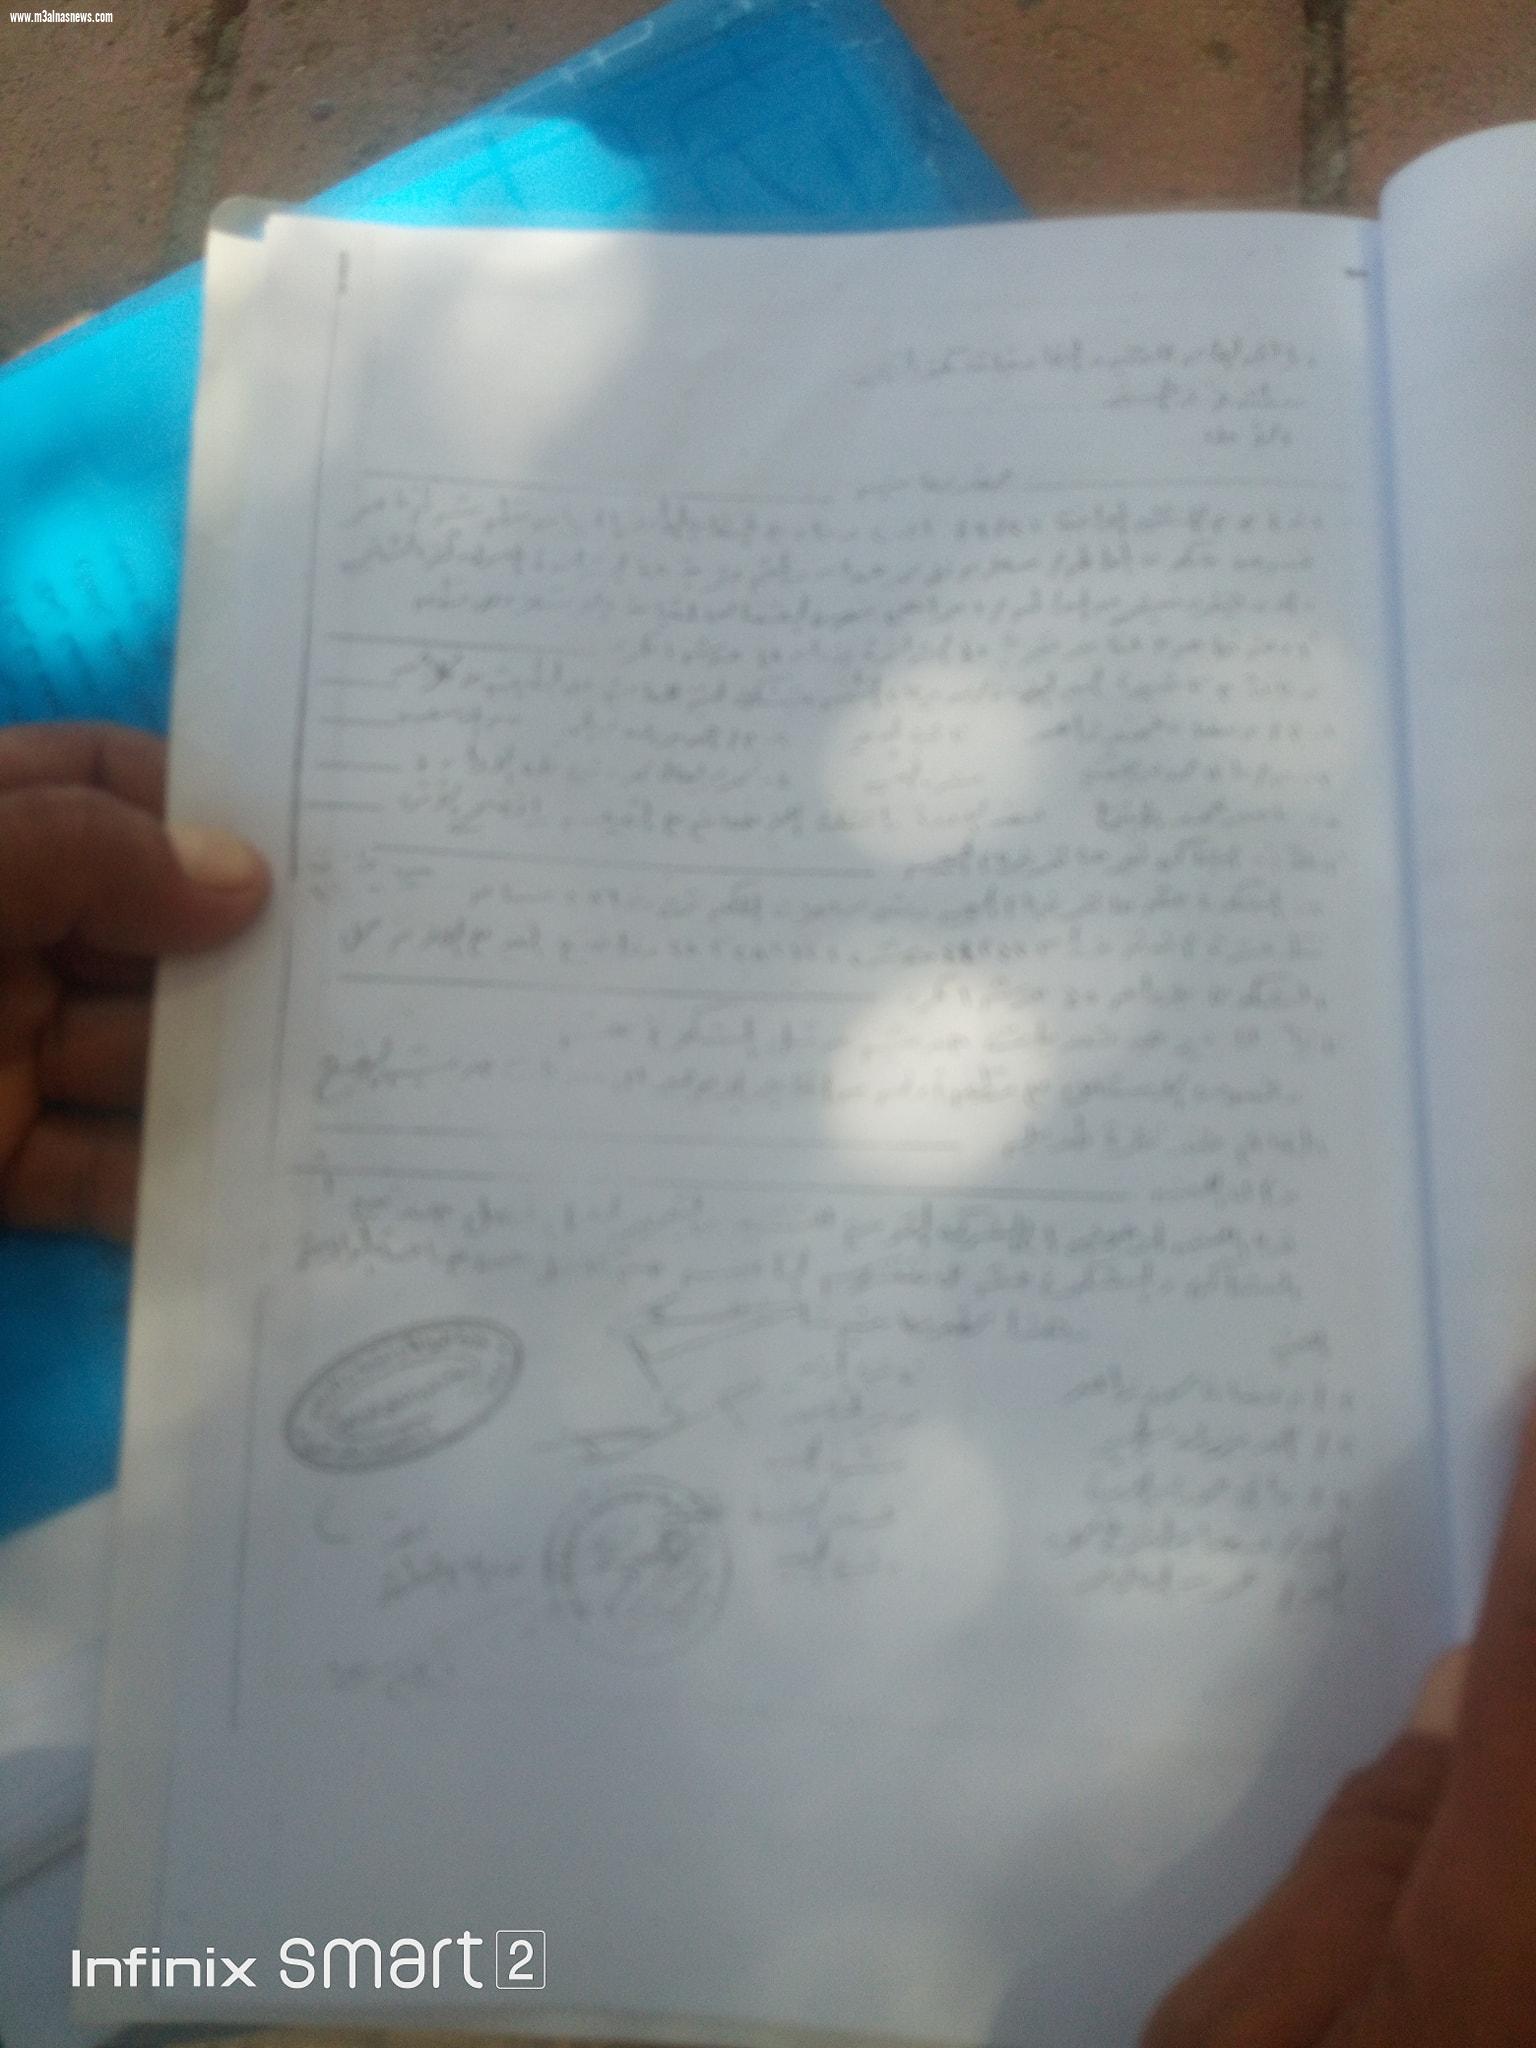 بالمستندات مواطن يتعدى على مقابر قرية باحدى محافظة كفرالشيخ